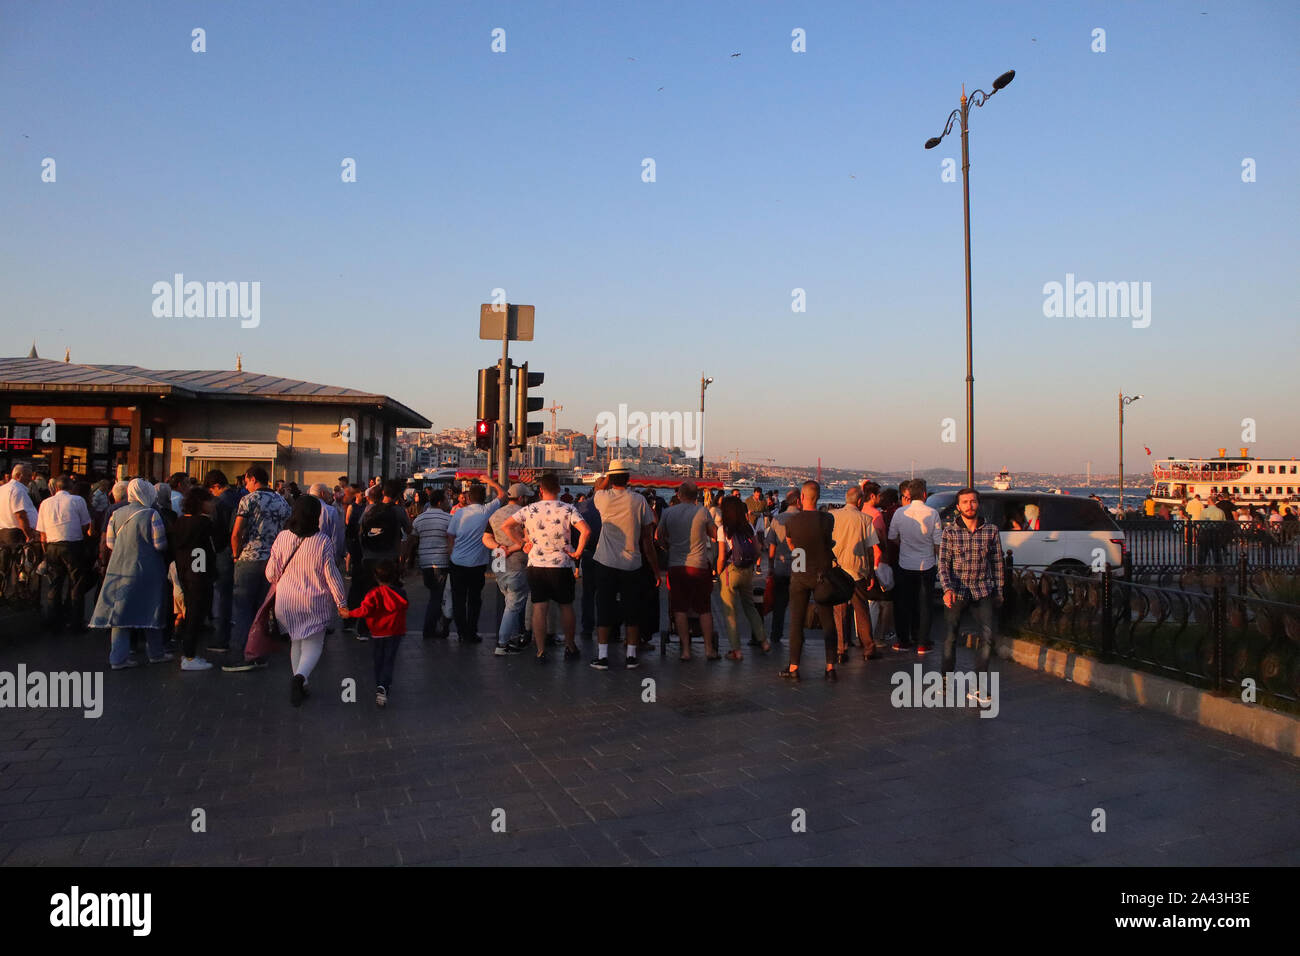 Istanbul, Fatih Eminonu / Turchia - 14 Settembre 2019: la gente in attesa di crose la strada nel quartiere Eminonu a Istanbul. Foto Stock